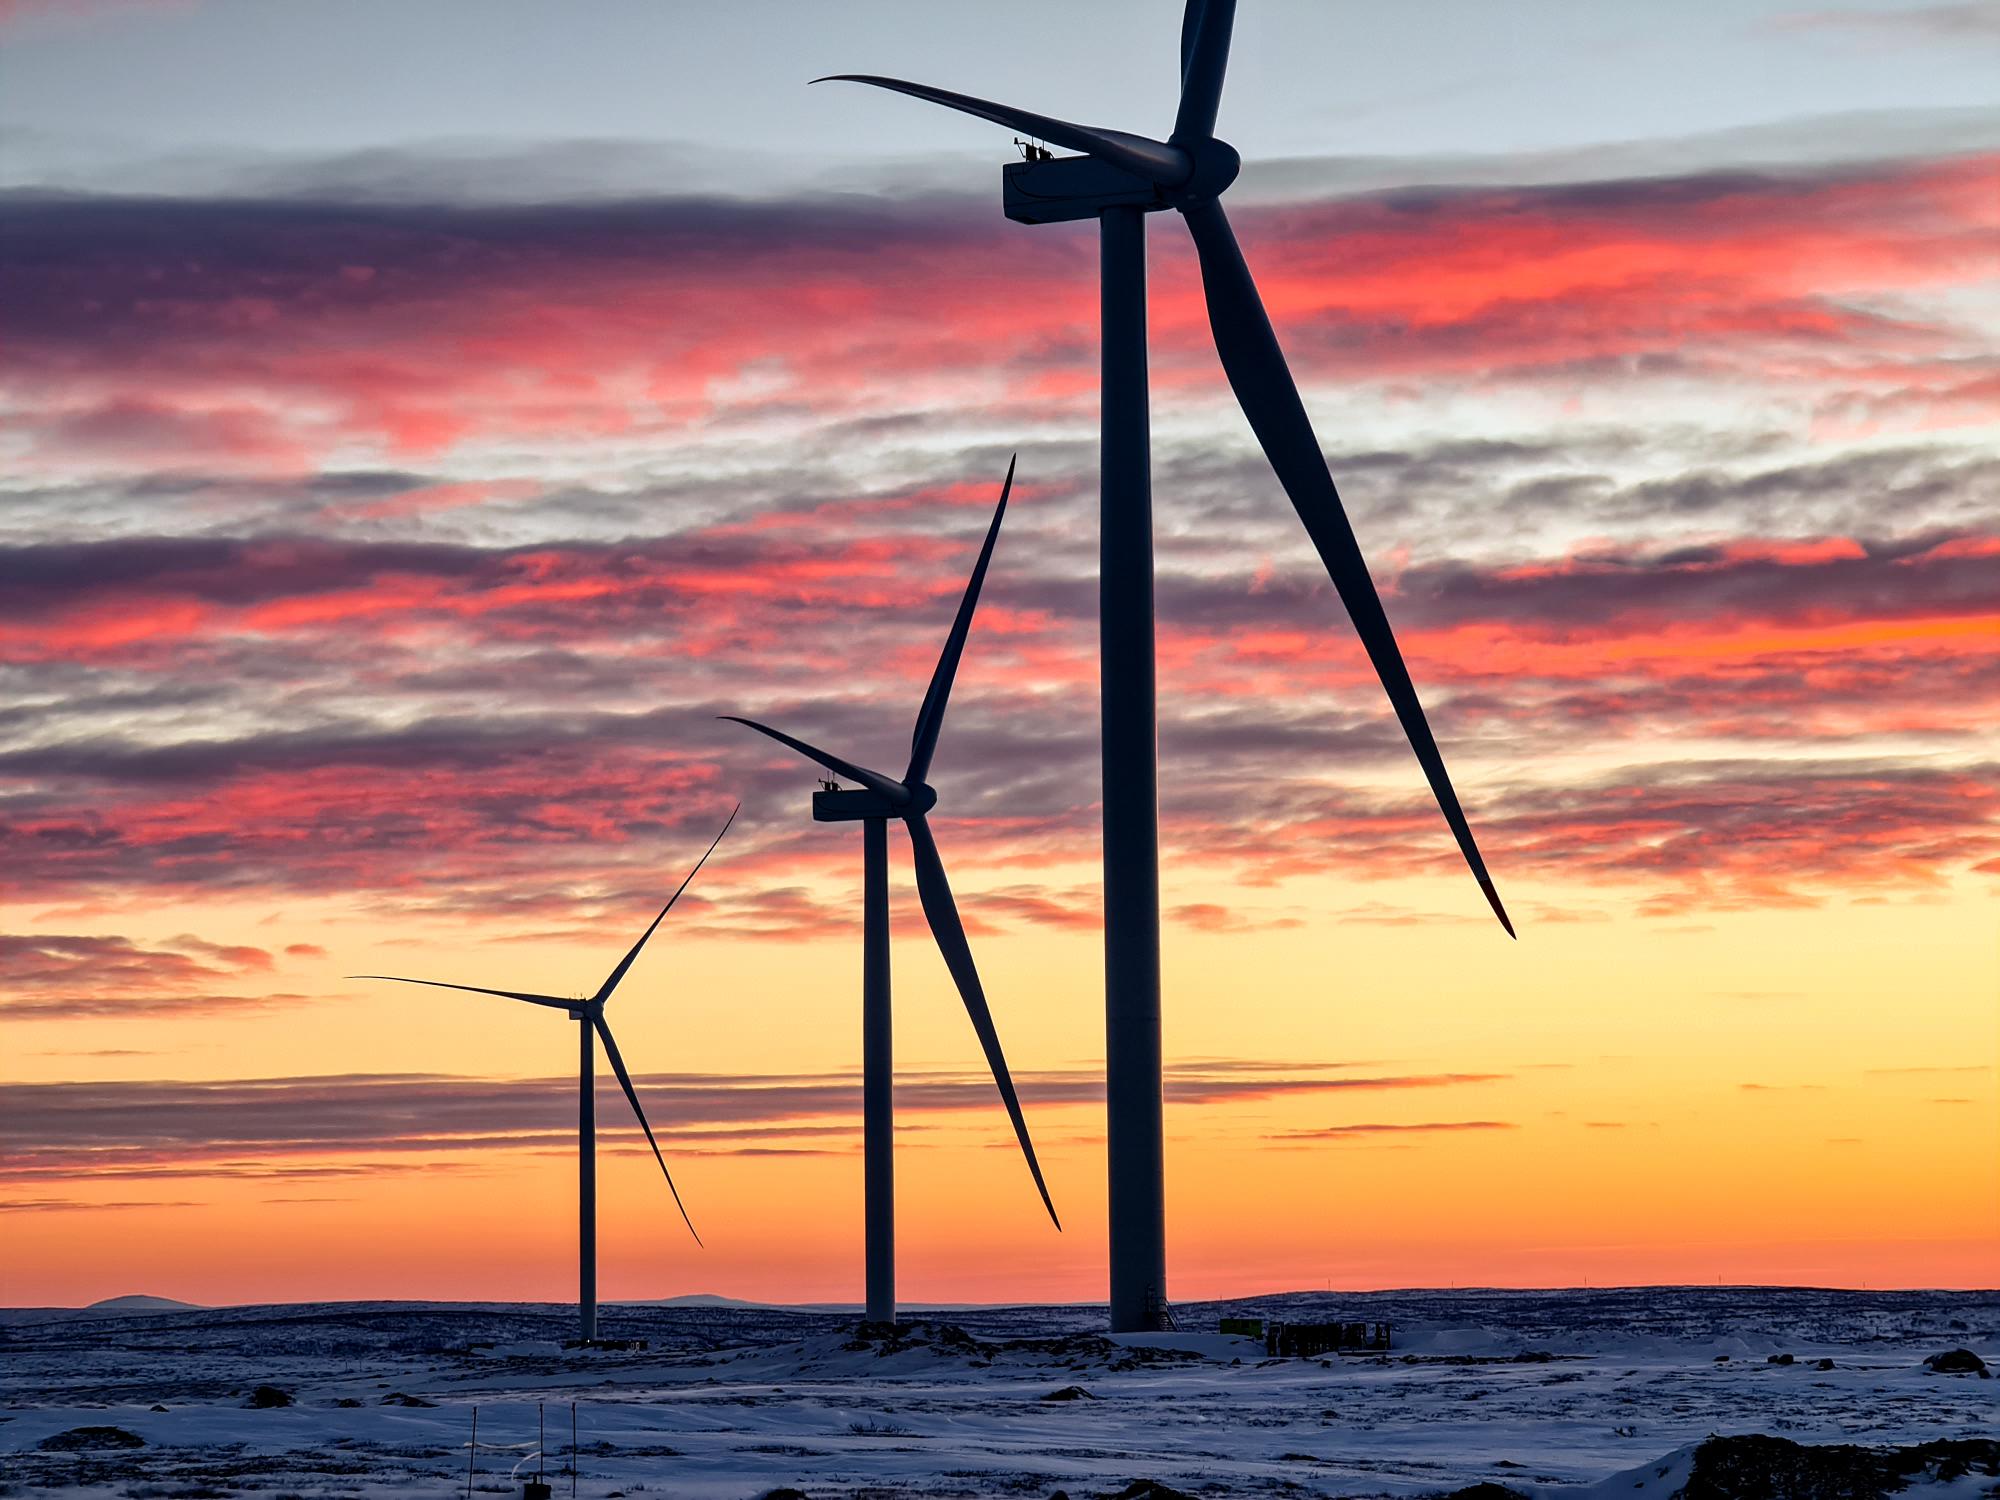 15 июля состоится необычный забег по территории самой мощной в мире ветроэлектростанции за Полярным кругом